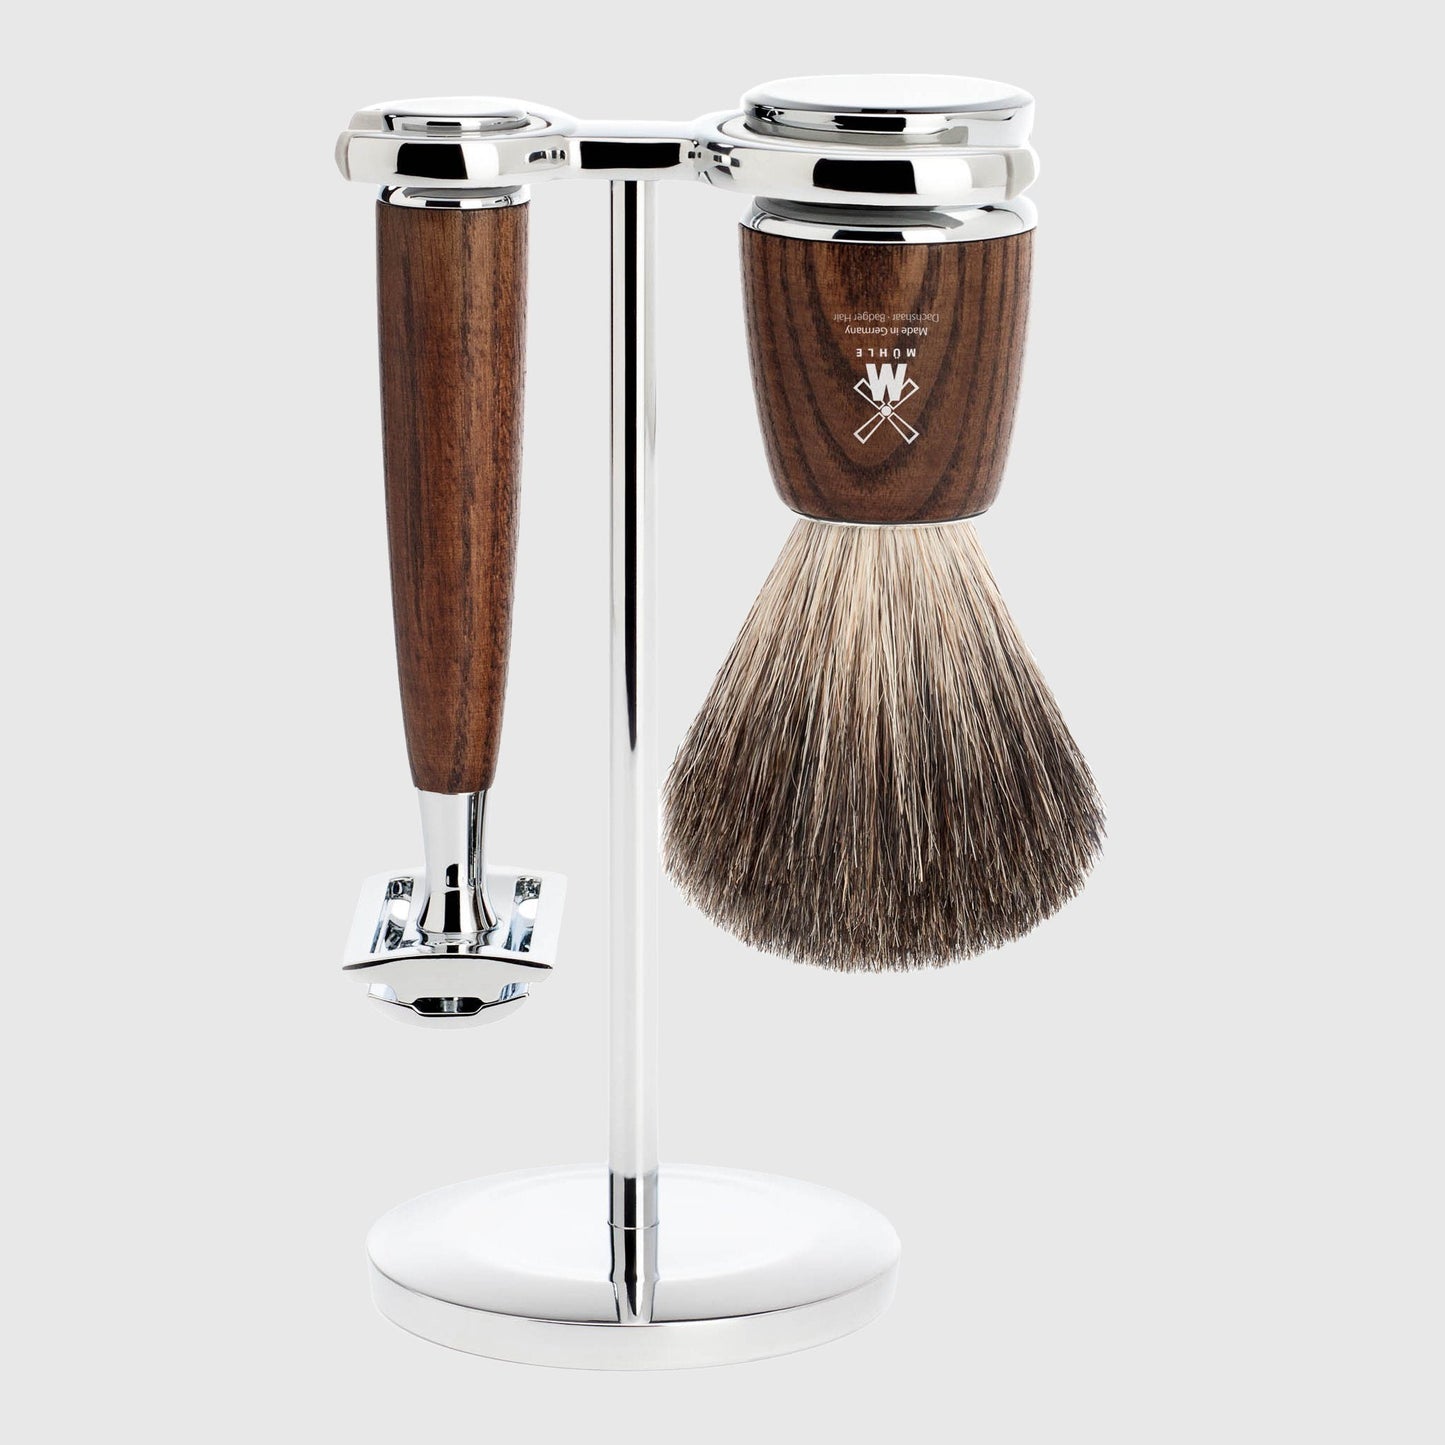 Rytmo 3-piece Shave Set Startsett til tradisjonell barbering Barbershop.no Ash Pure Badger 